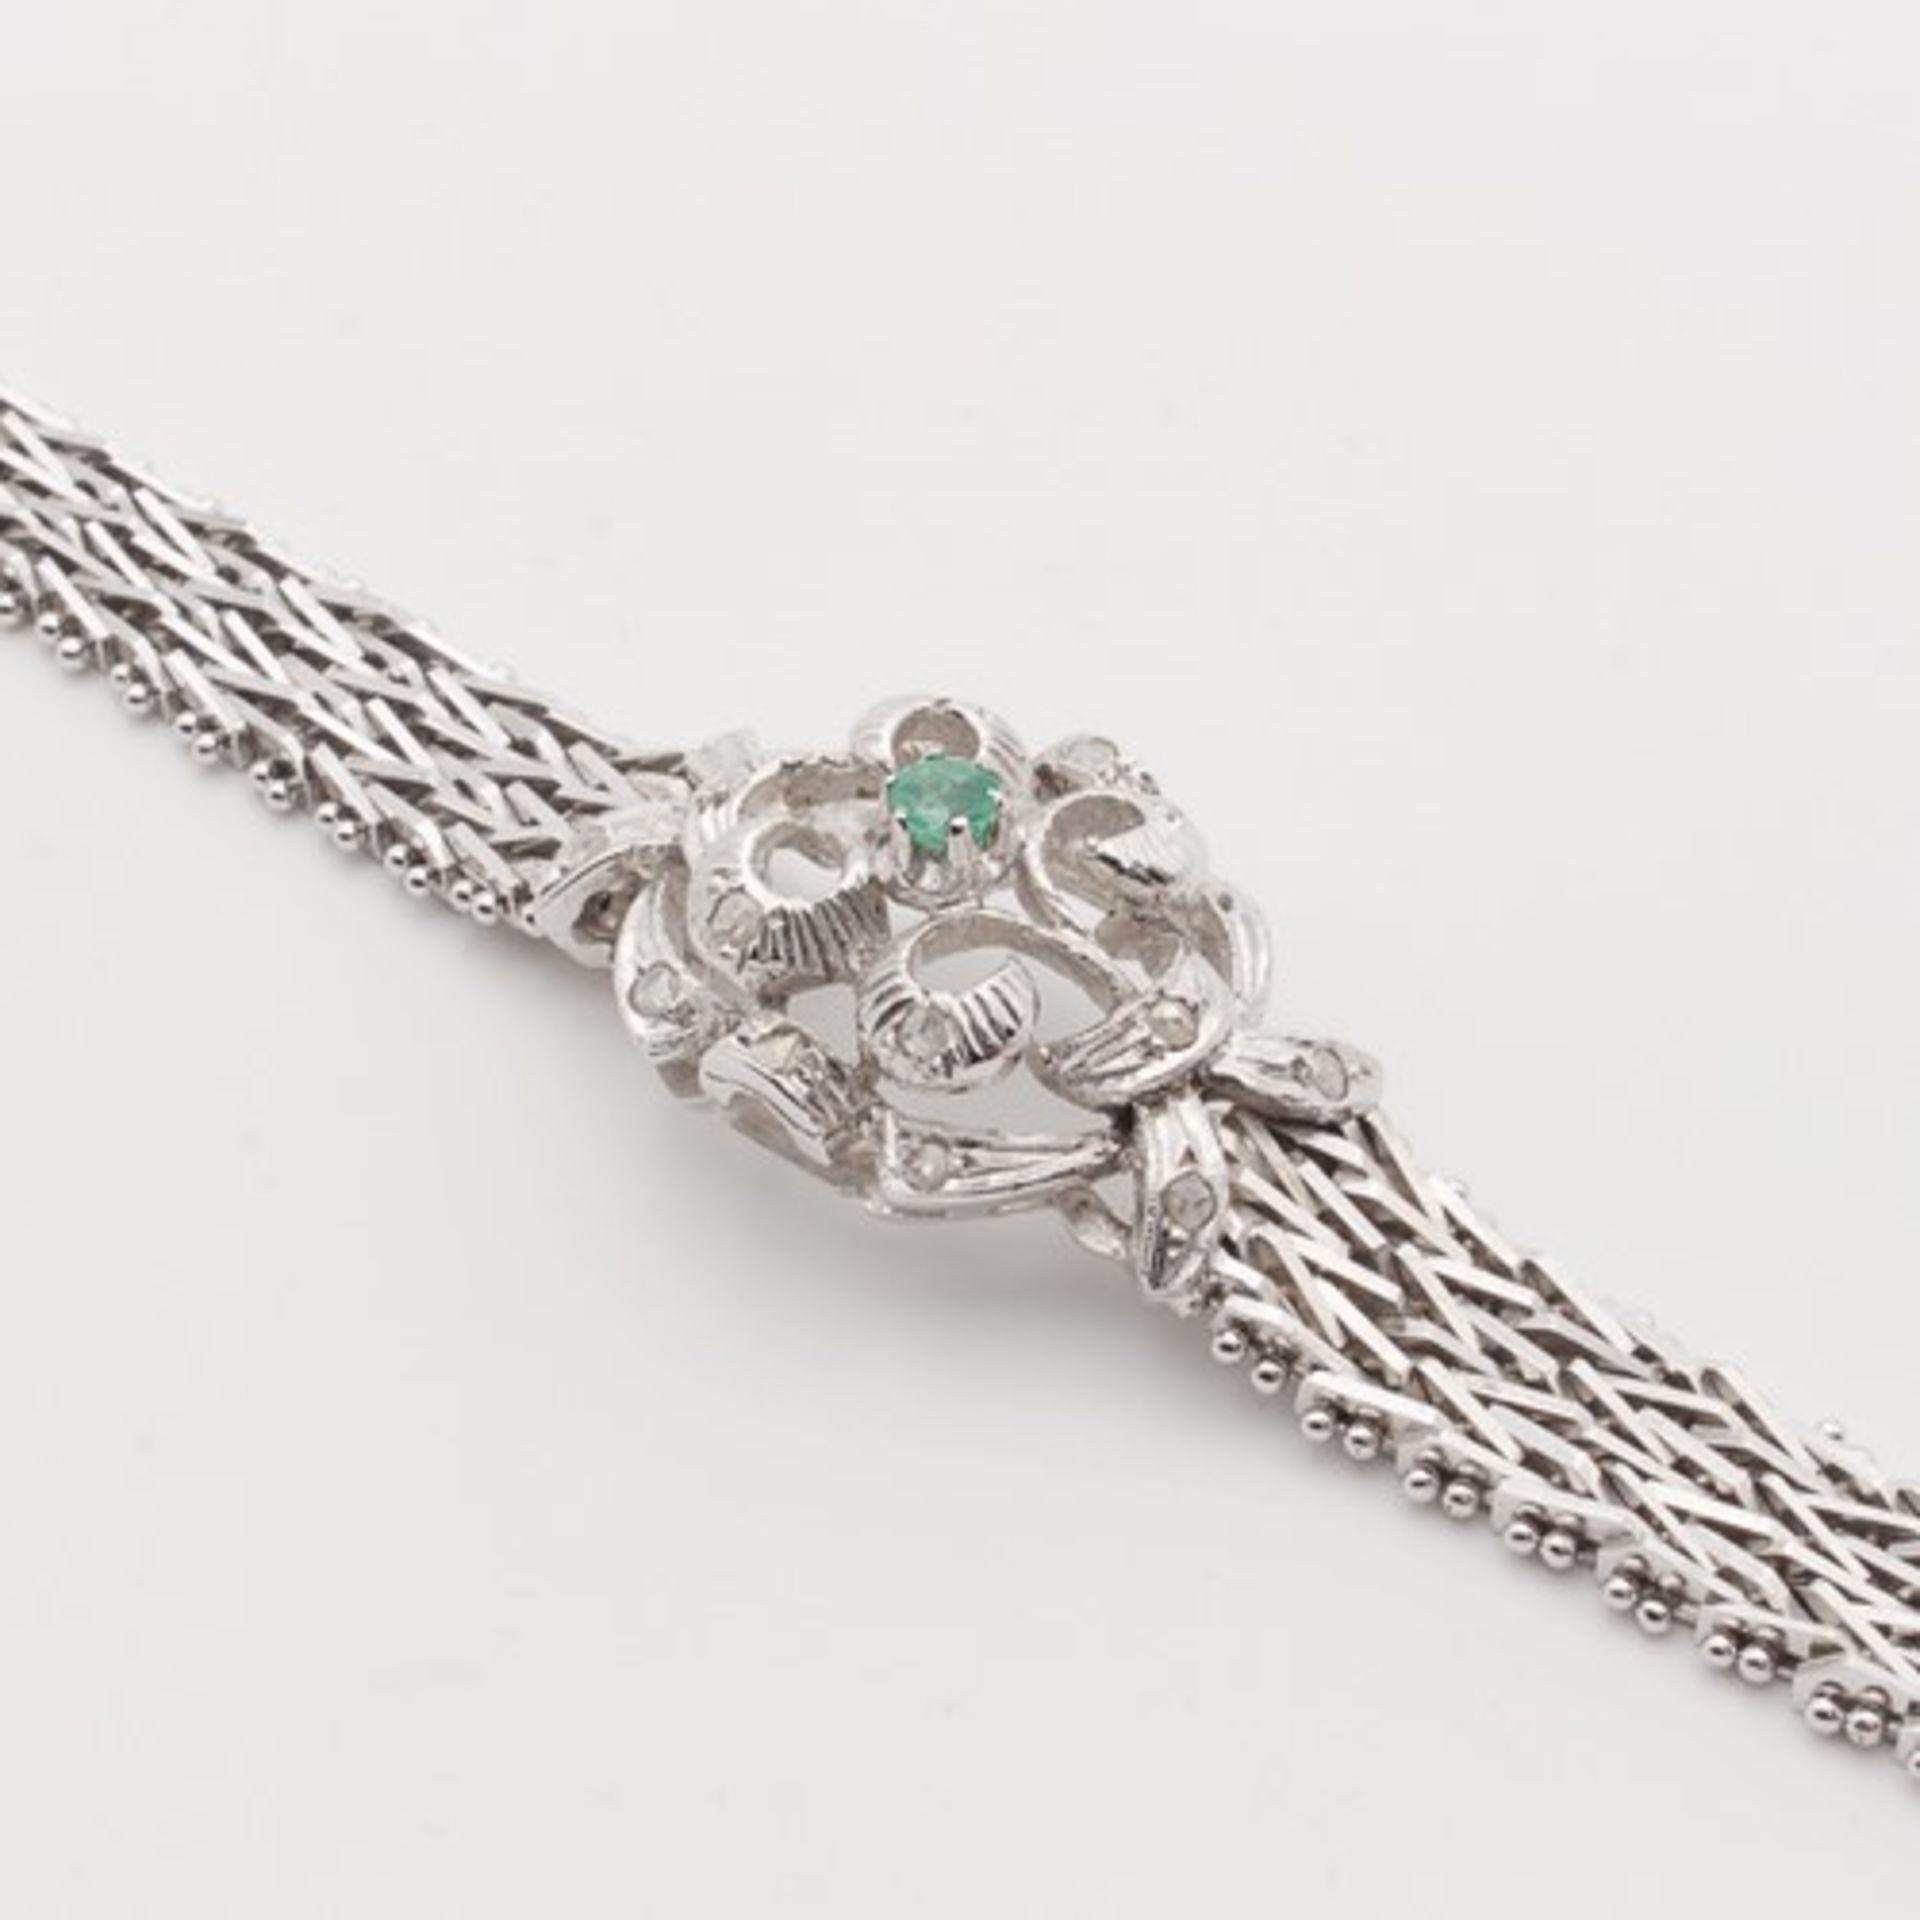 Diamant/Smaragd - ArmbandWG 750, florales, durchbrochenes Mittelteil, besetzt mit Diamantrosen u. - Bild 6 aus 6